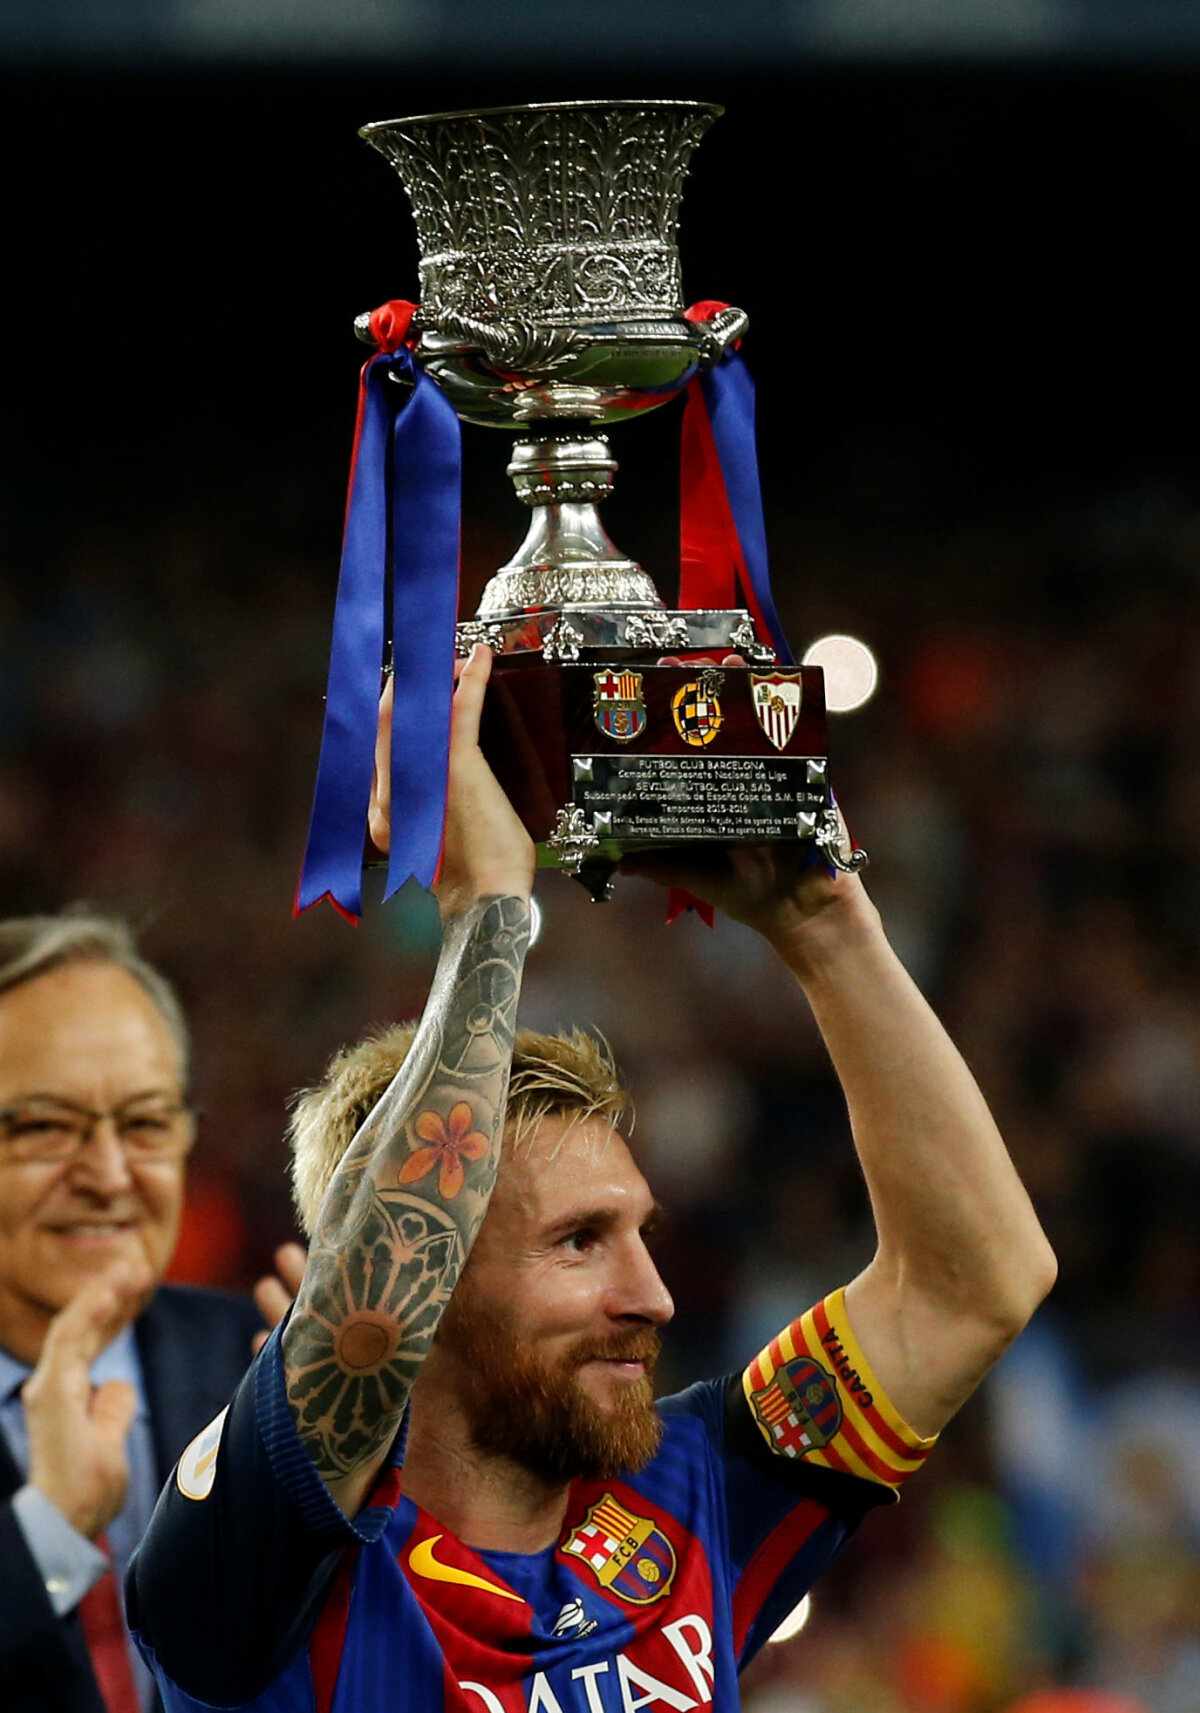 VIDEO + FOTO Barcelona a câștigat primul trofeu al sezonului: Supercupa Spaniei! Goluri fabuloase marcate de Turan și Messi